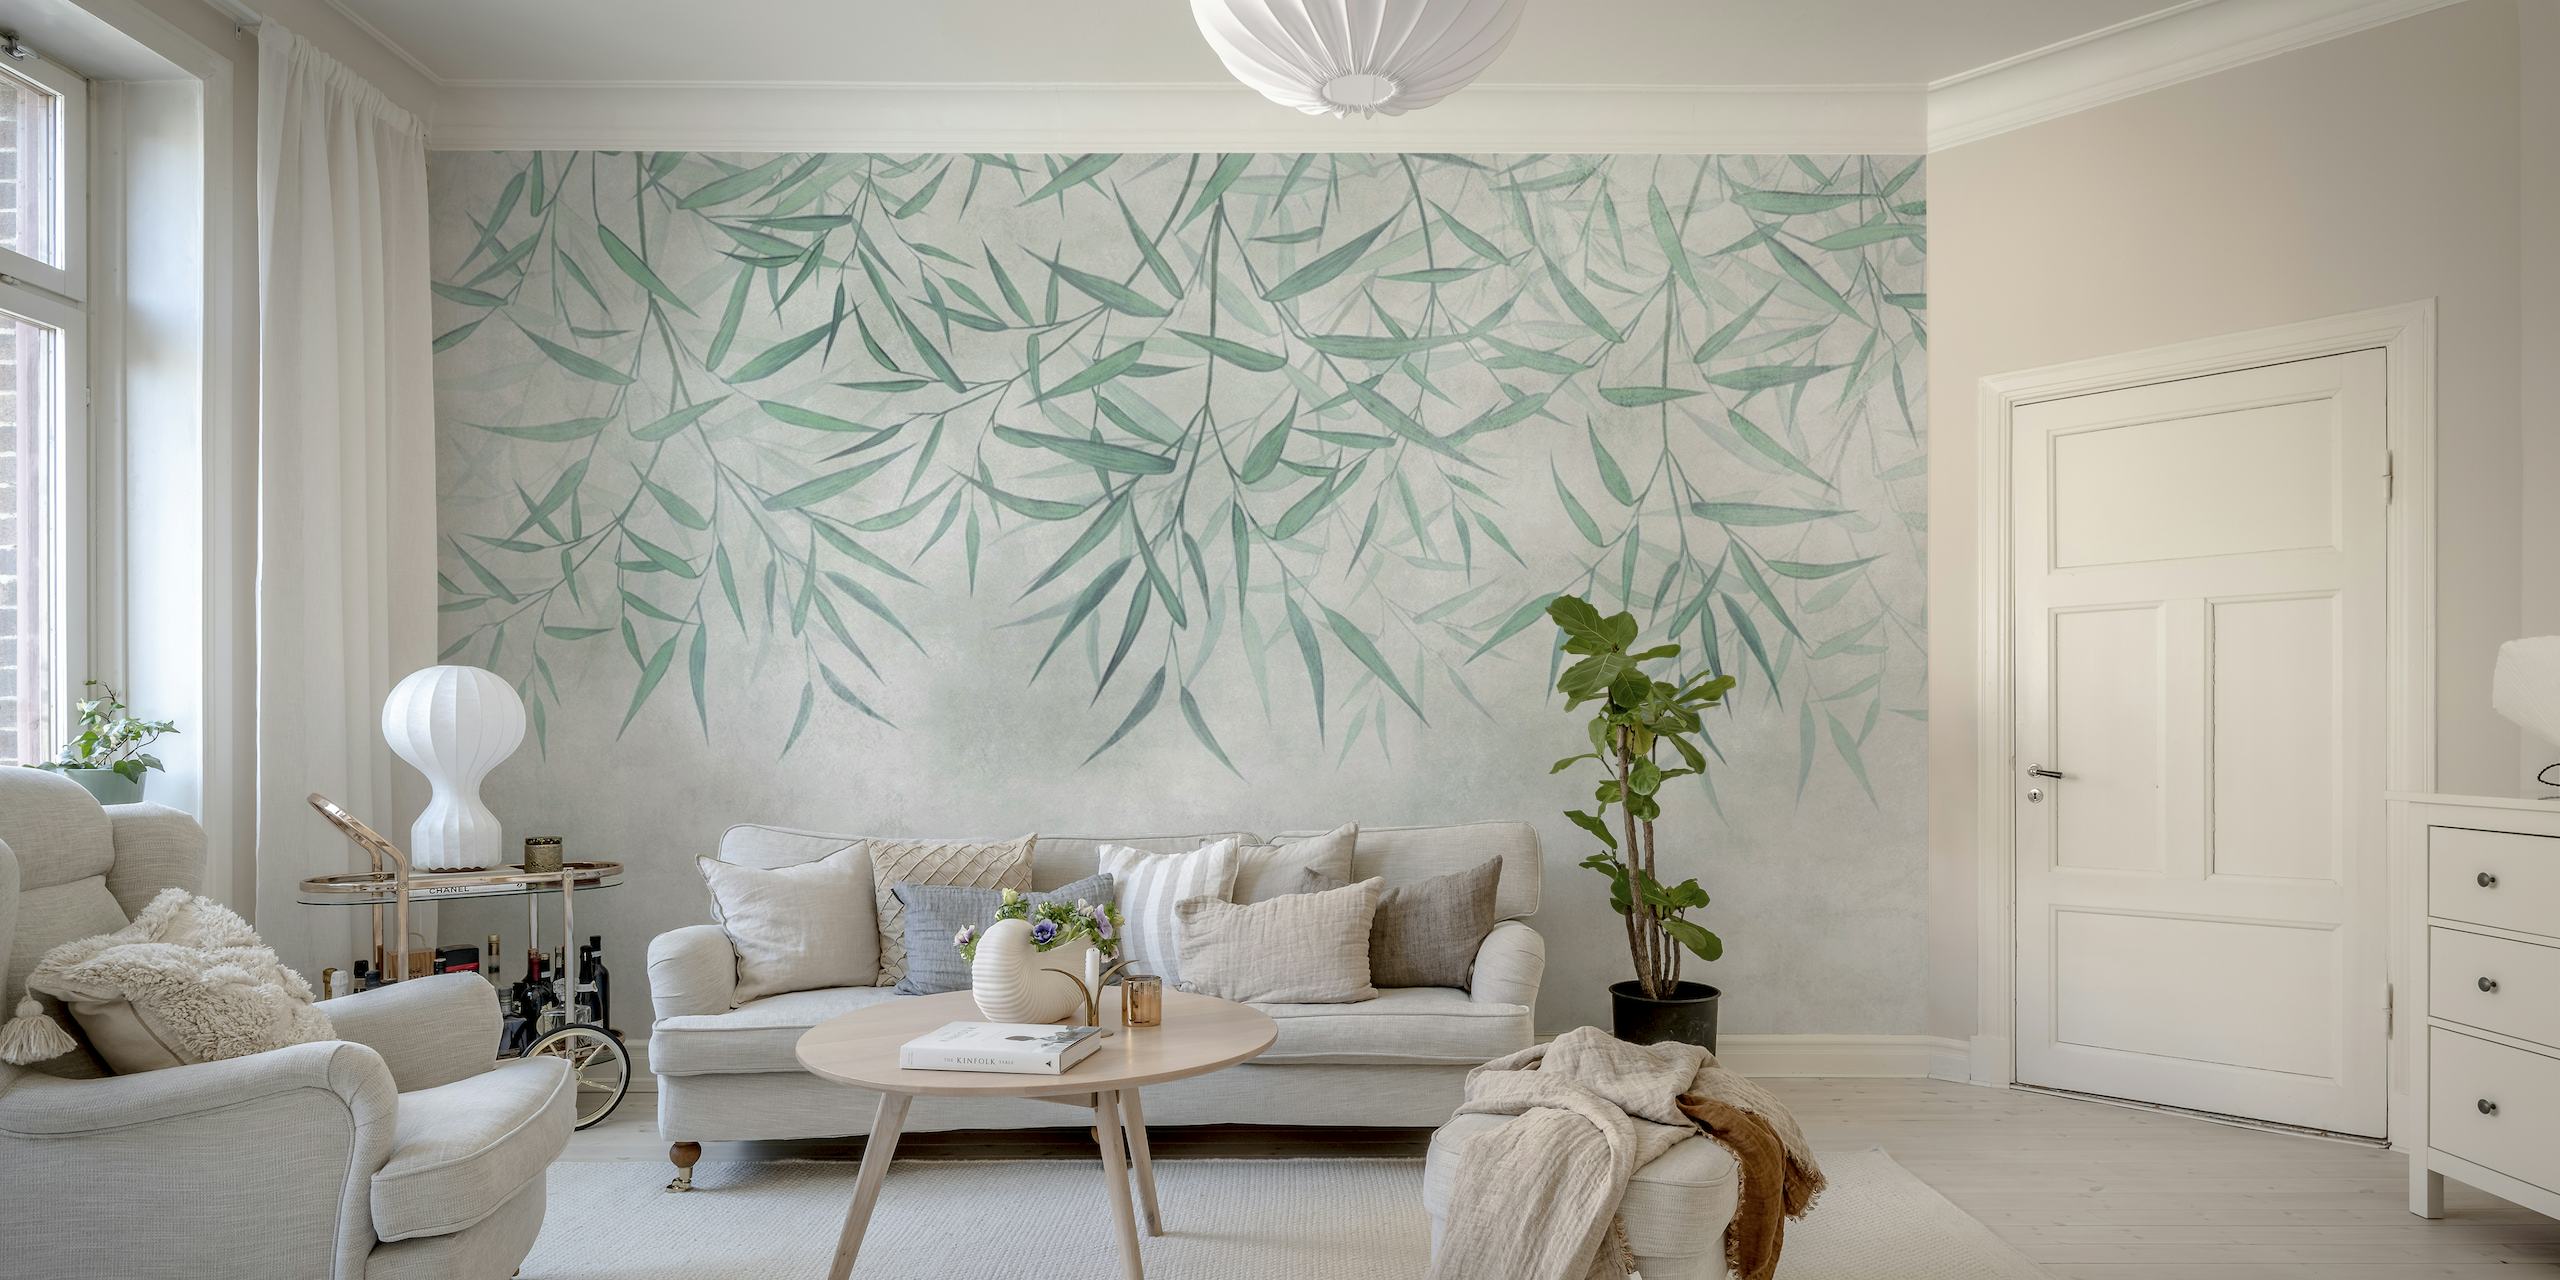 Vægmaleri af hængende bambusblade med en blød tekstureret baggrund, der skaber en fredelig og naturlig atmosfære